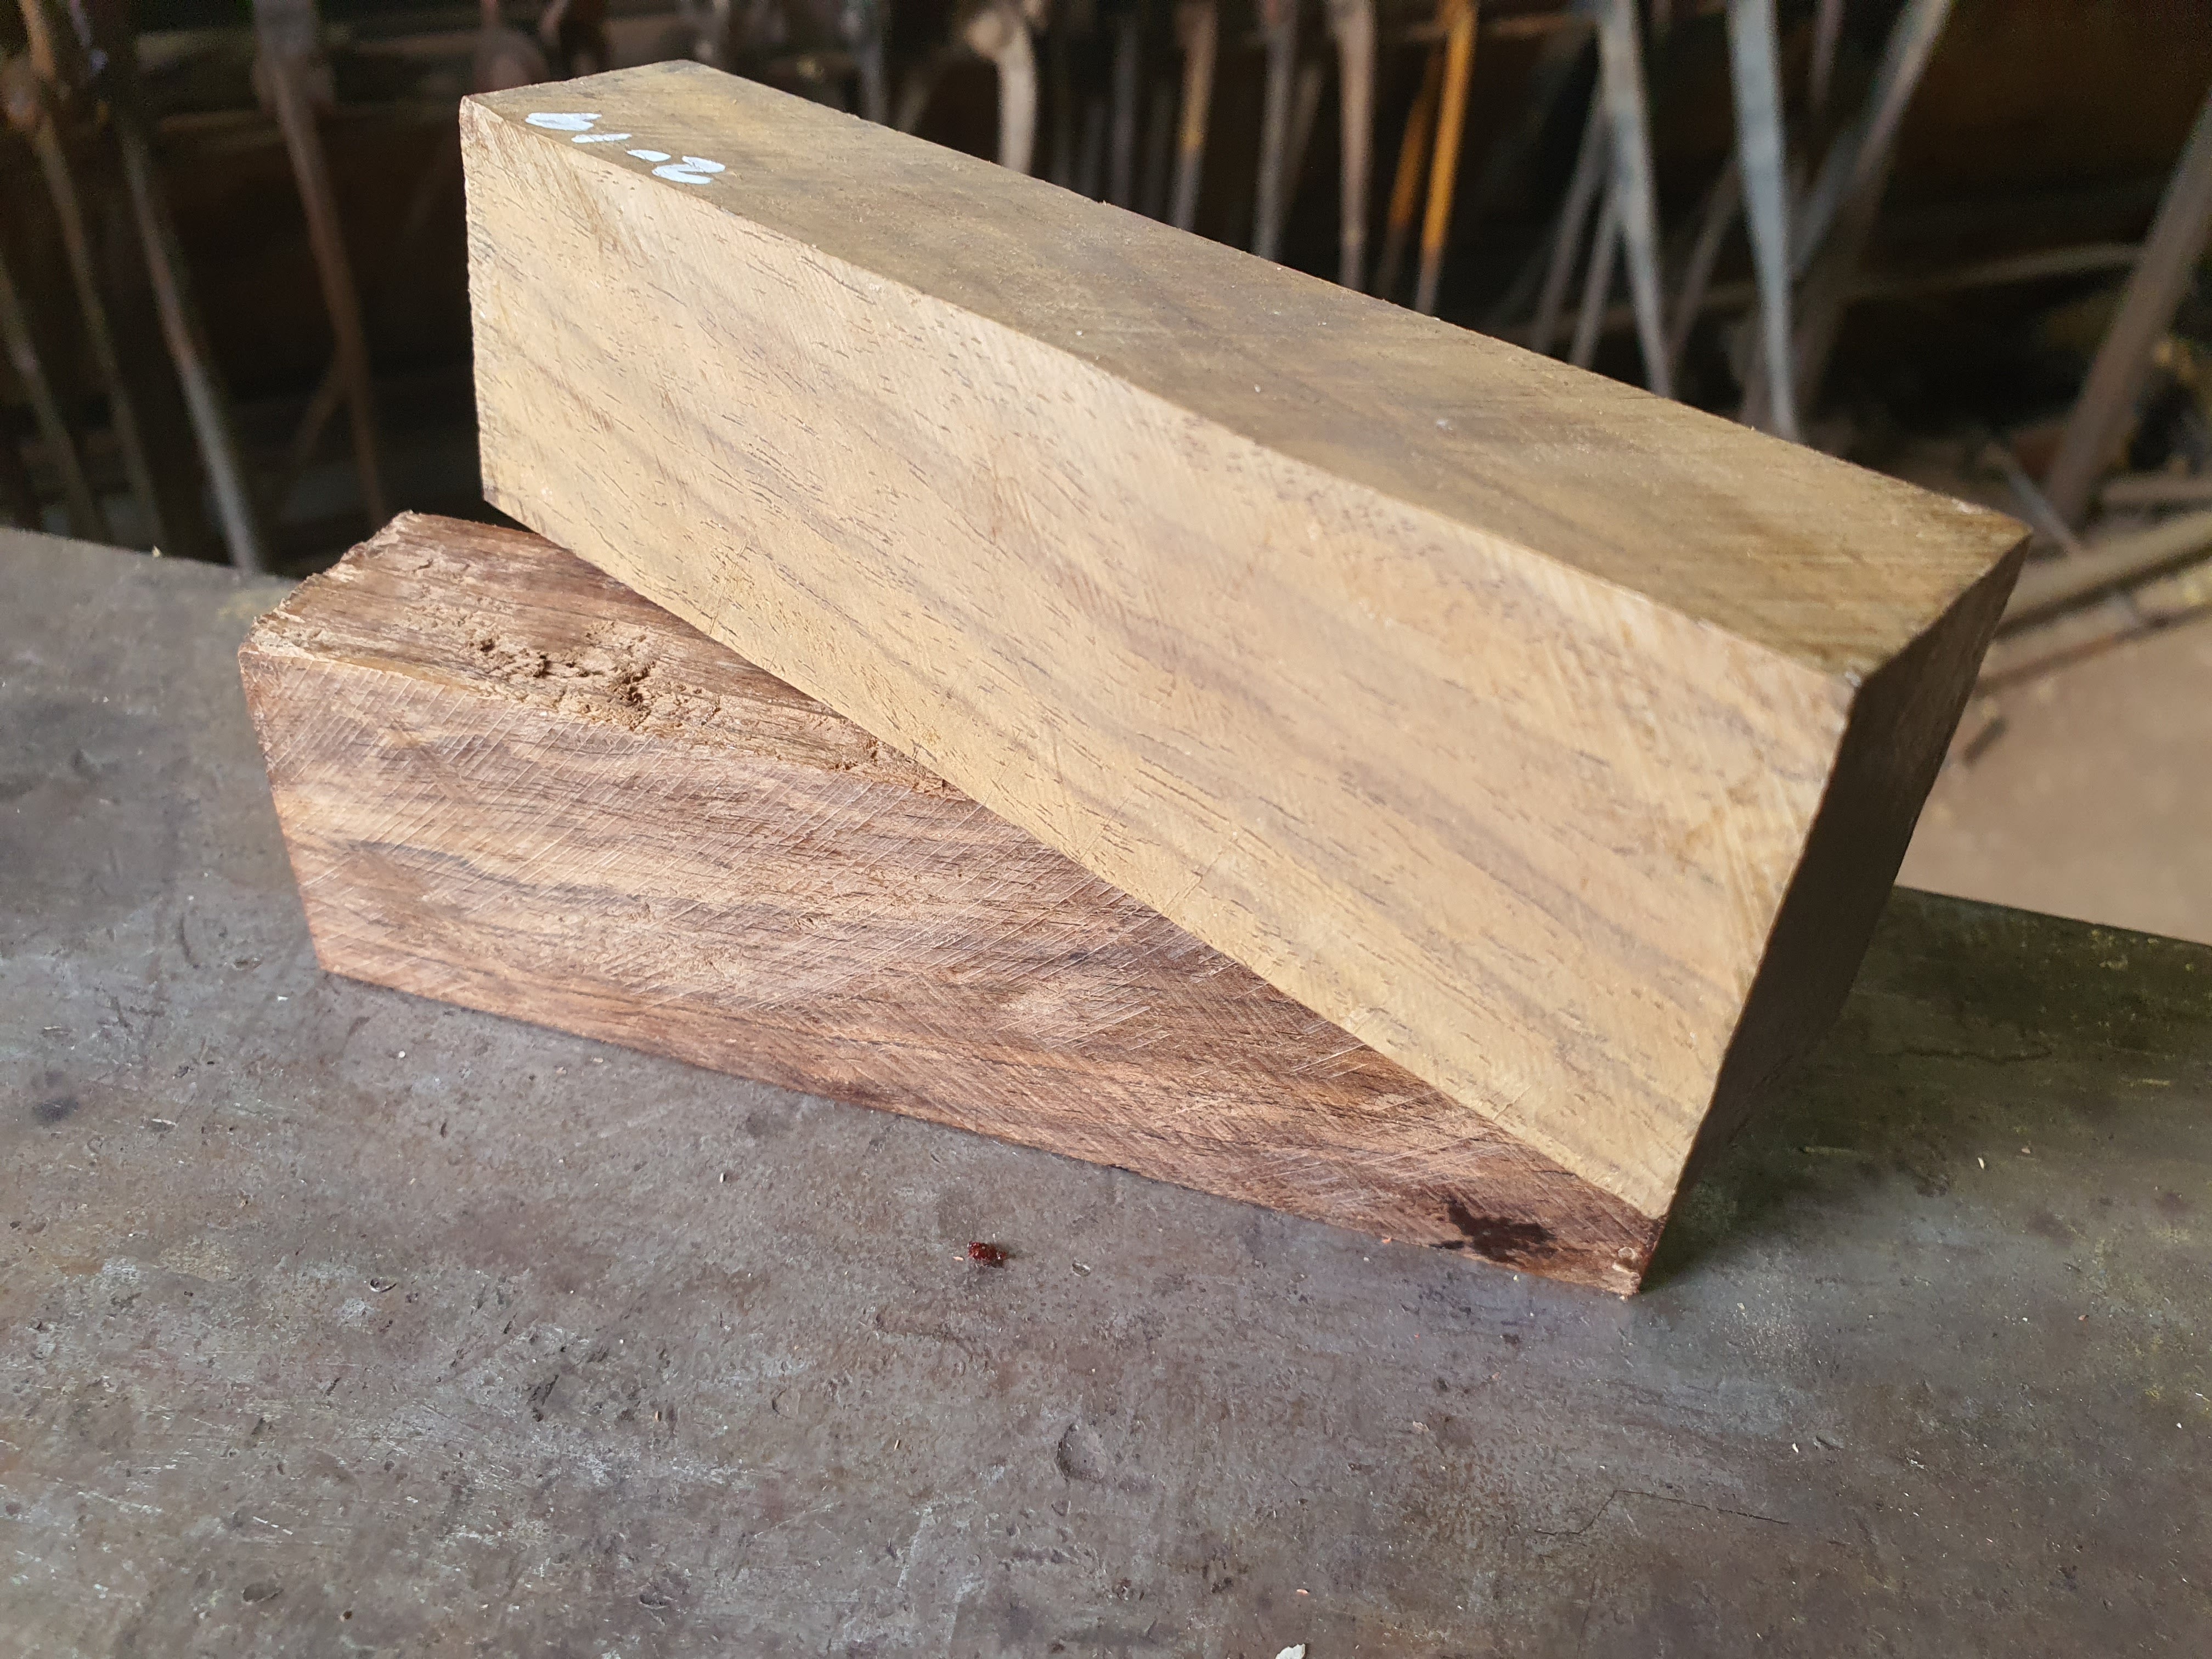 Wood handle material